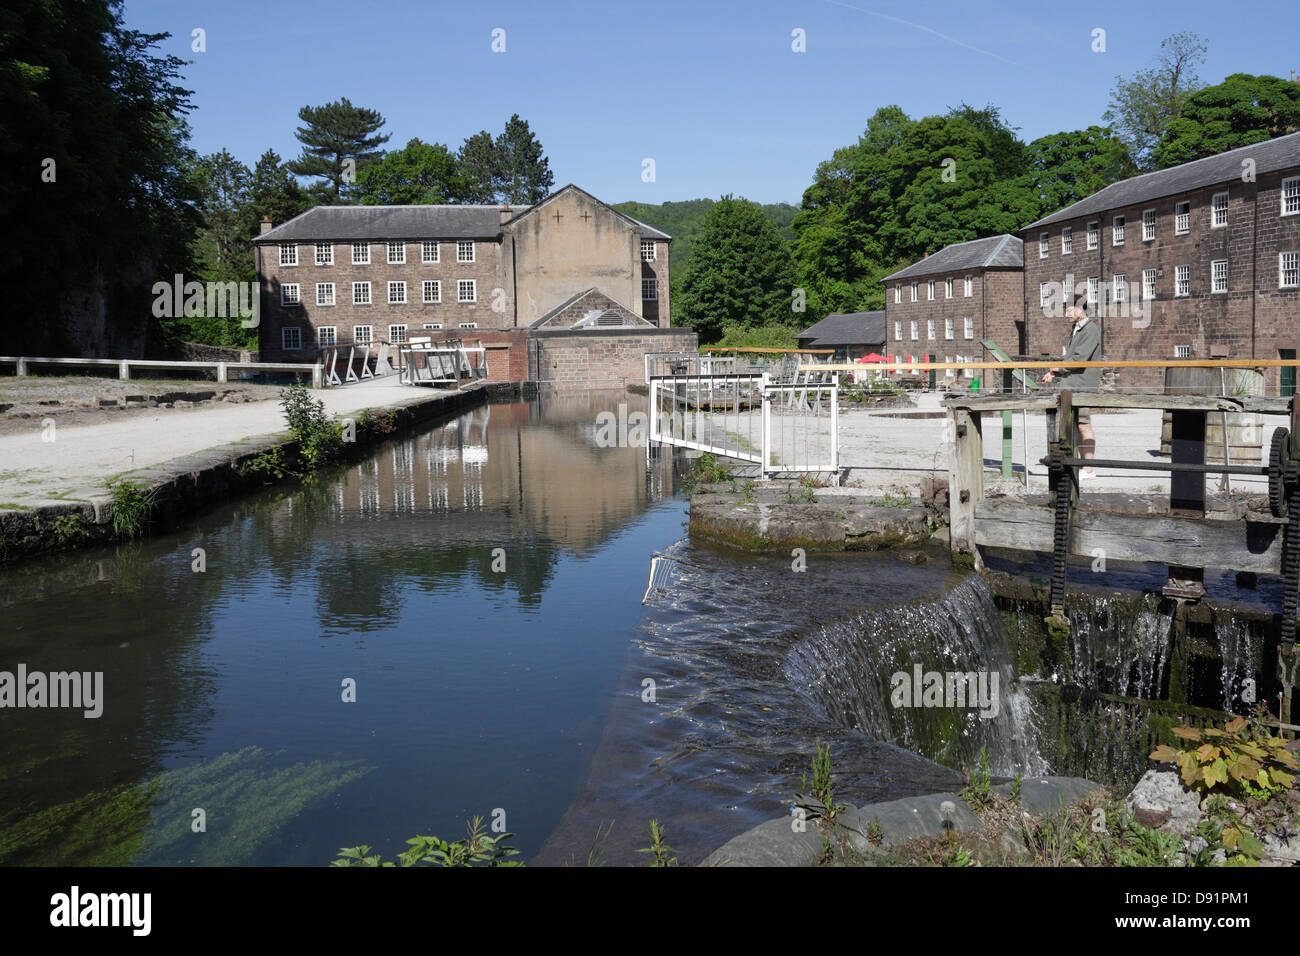 Bâtiments Old Mill et l'écluse de ruisseau Arkwright's Mill Cromford Derbyshire Angleterre Royaume-Uni, un site du patrimoine mondial classé Grade I Banque D'Images